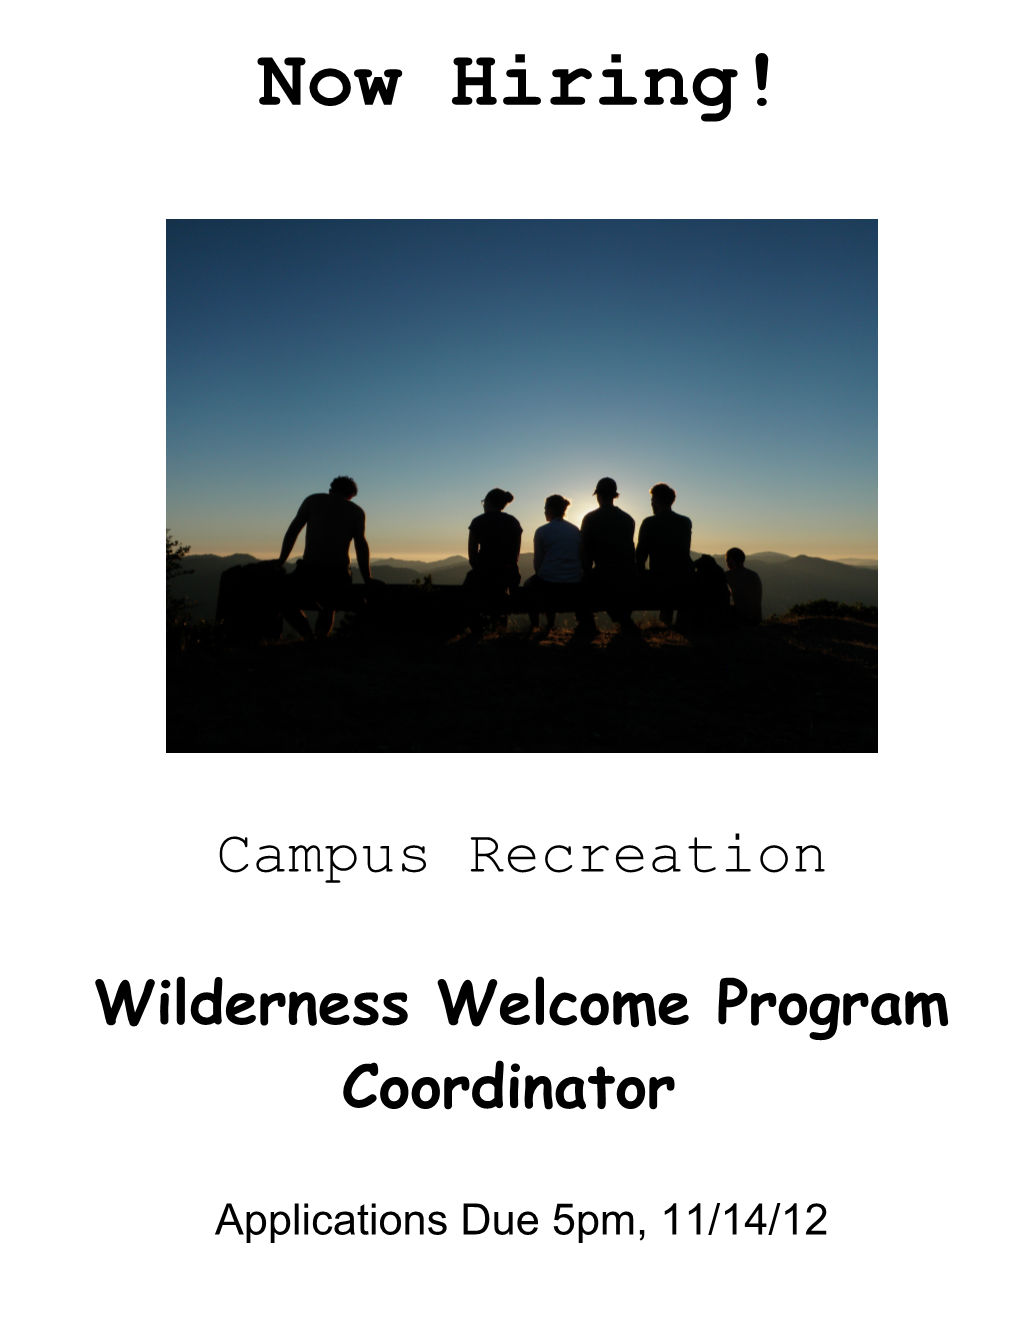 Wilderness Welcome Program Coordinator